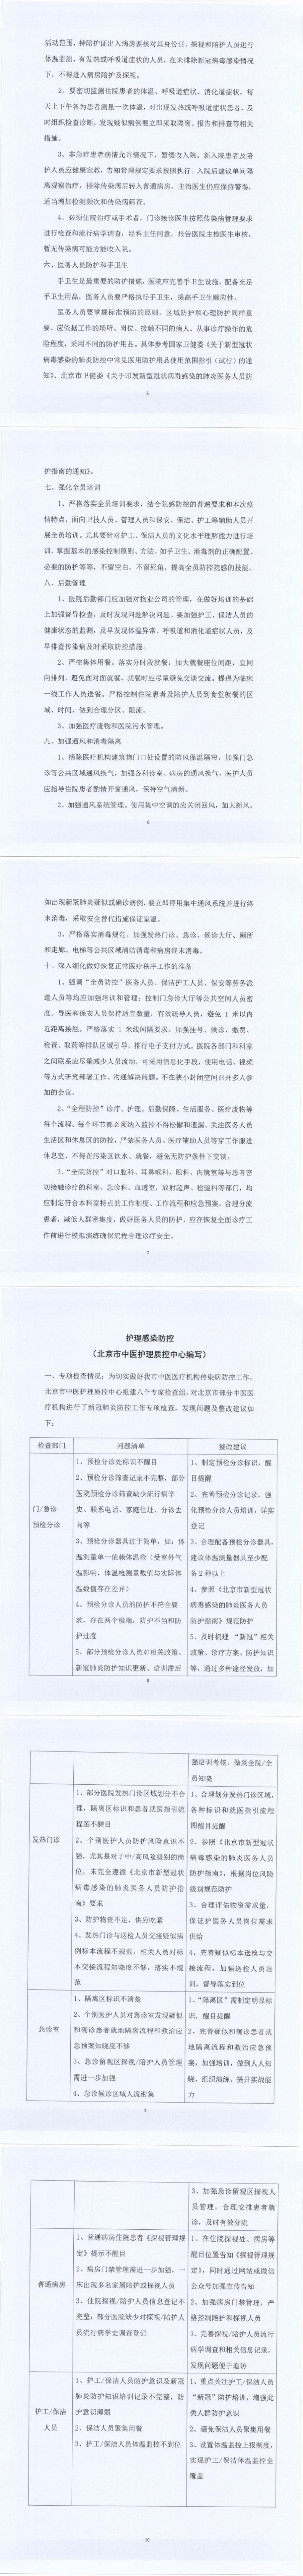 关于北京市中医医疗机构感染防控的指导意见_5-10_0.jpg